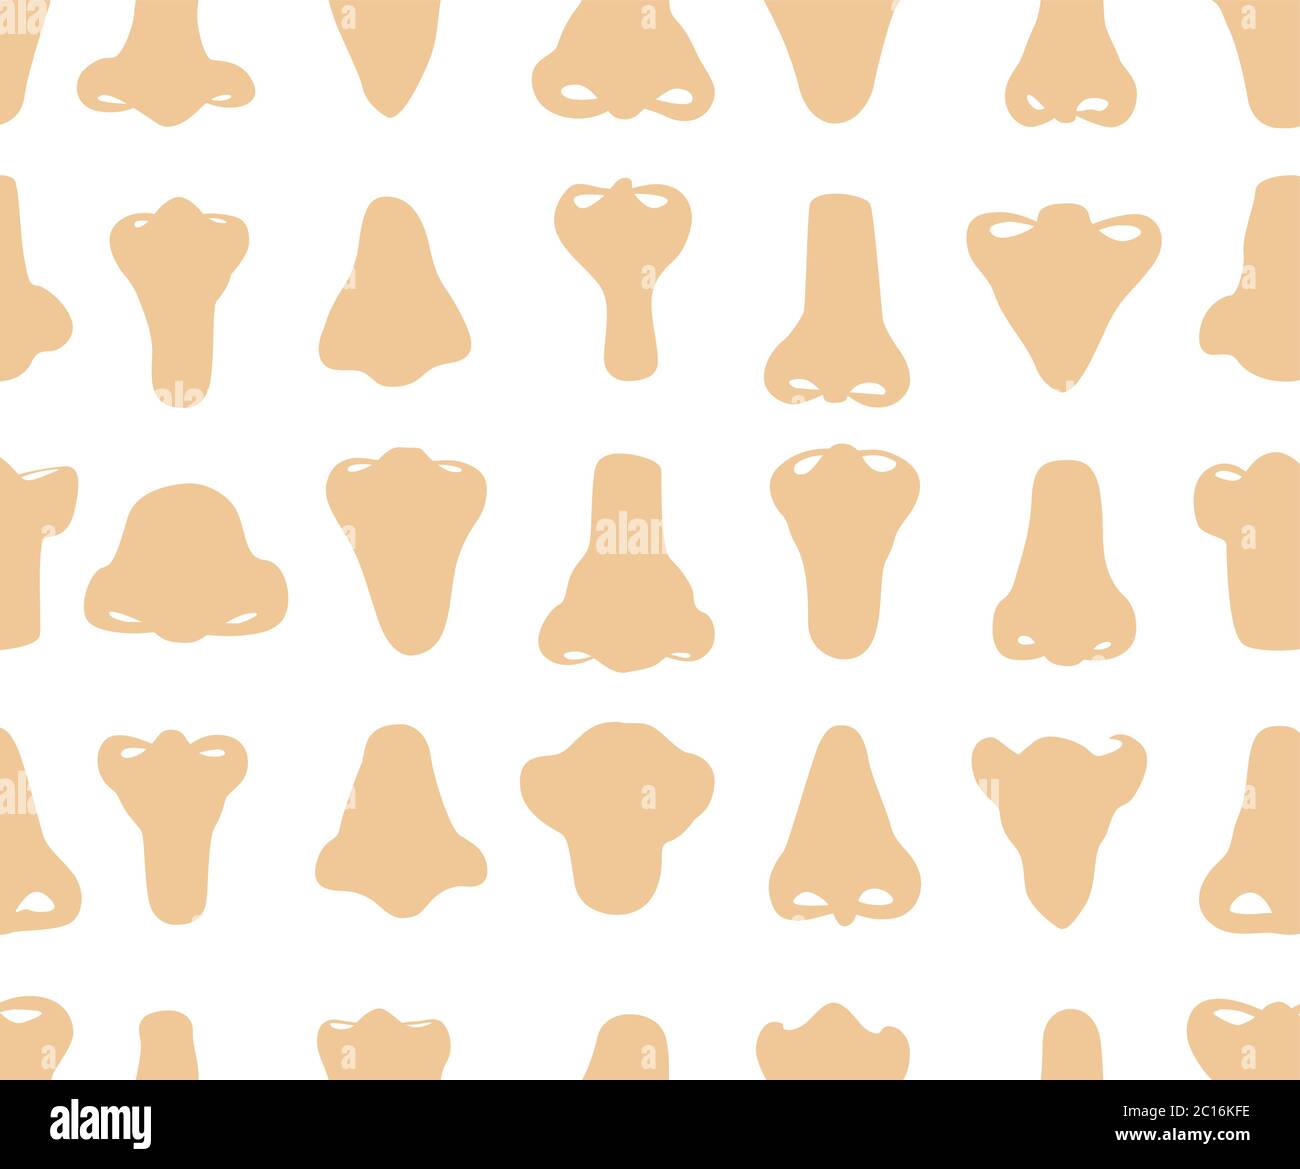 Nahtlose Vektor-Muster von Hand gezeichneten Illustrationen von verschiedenen Formen von Nasen. Stock Vektor